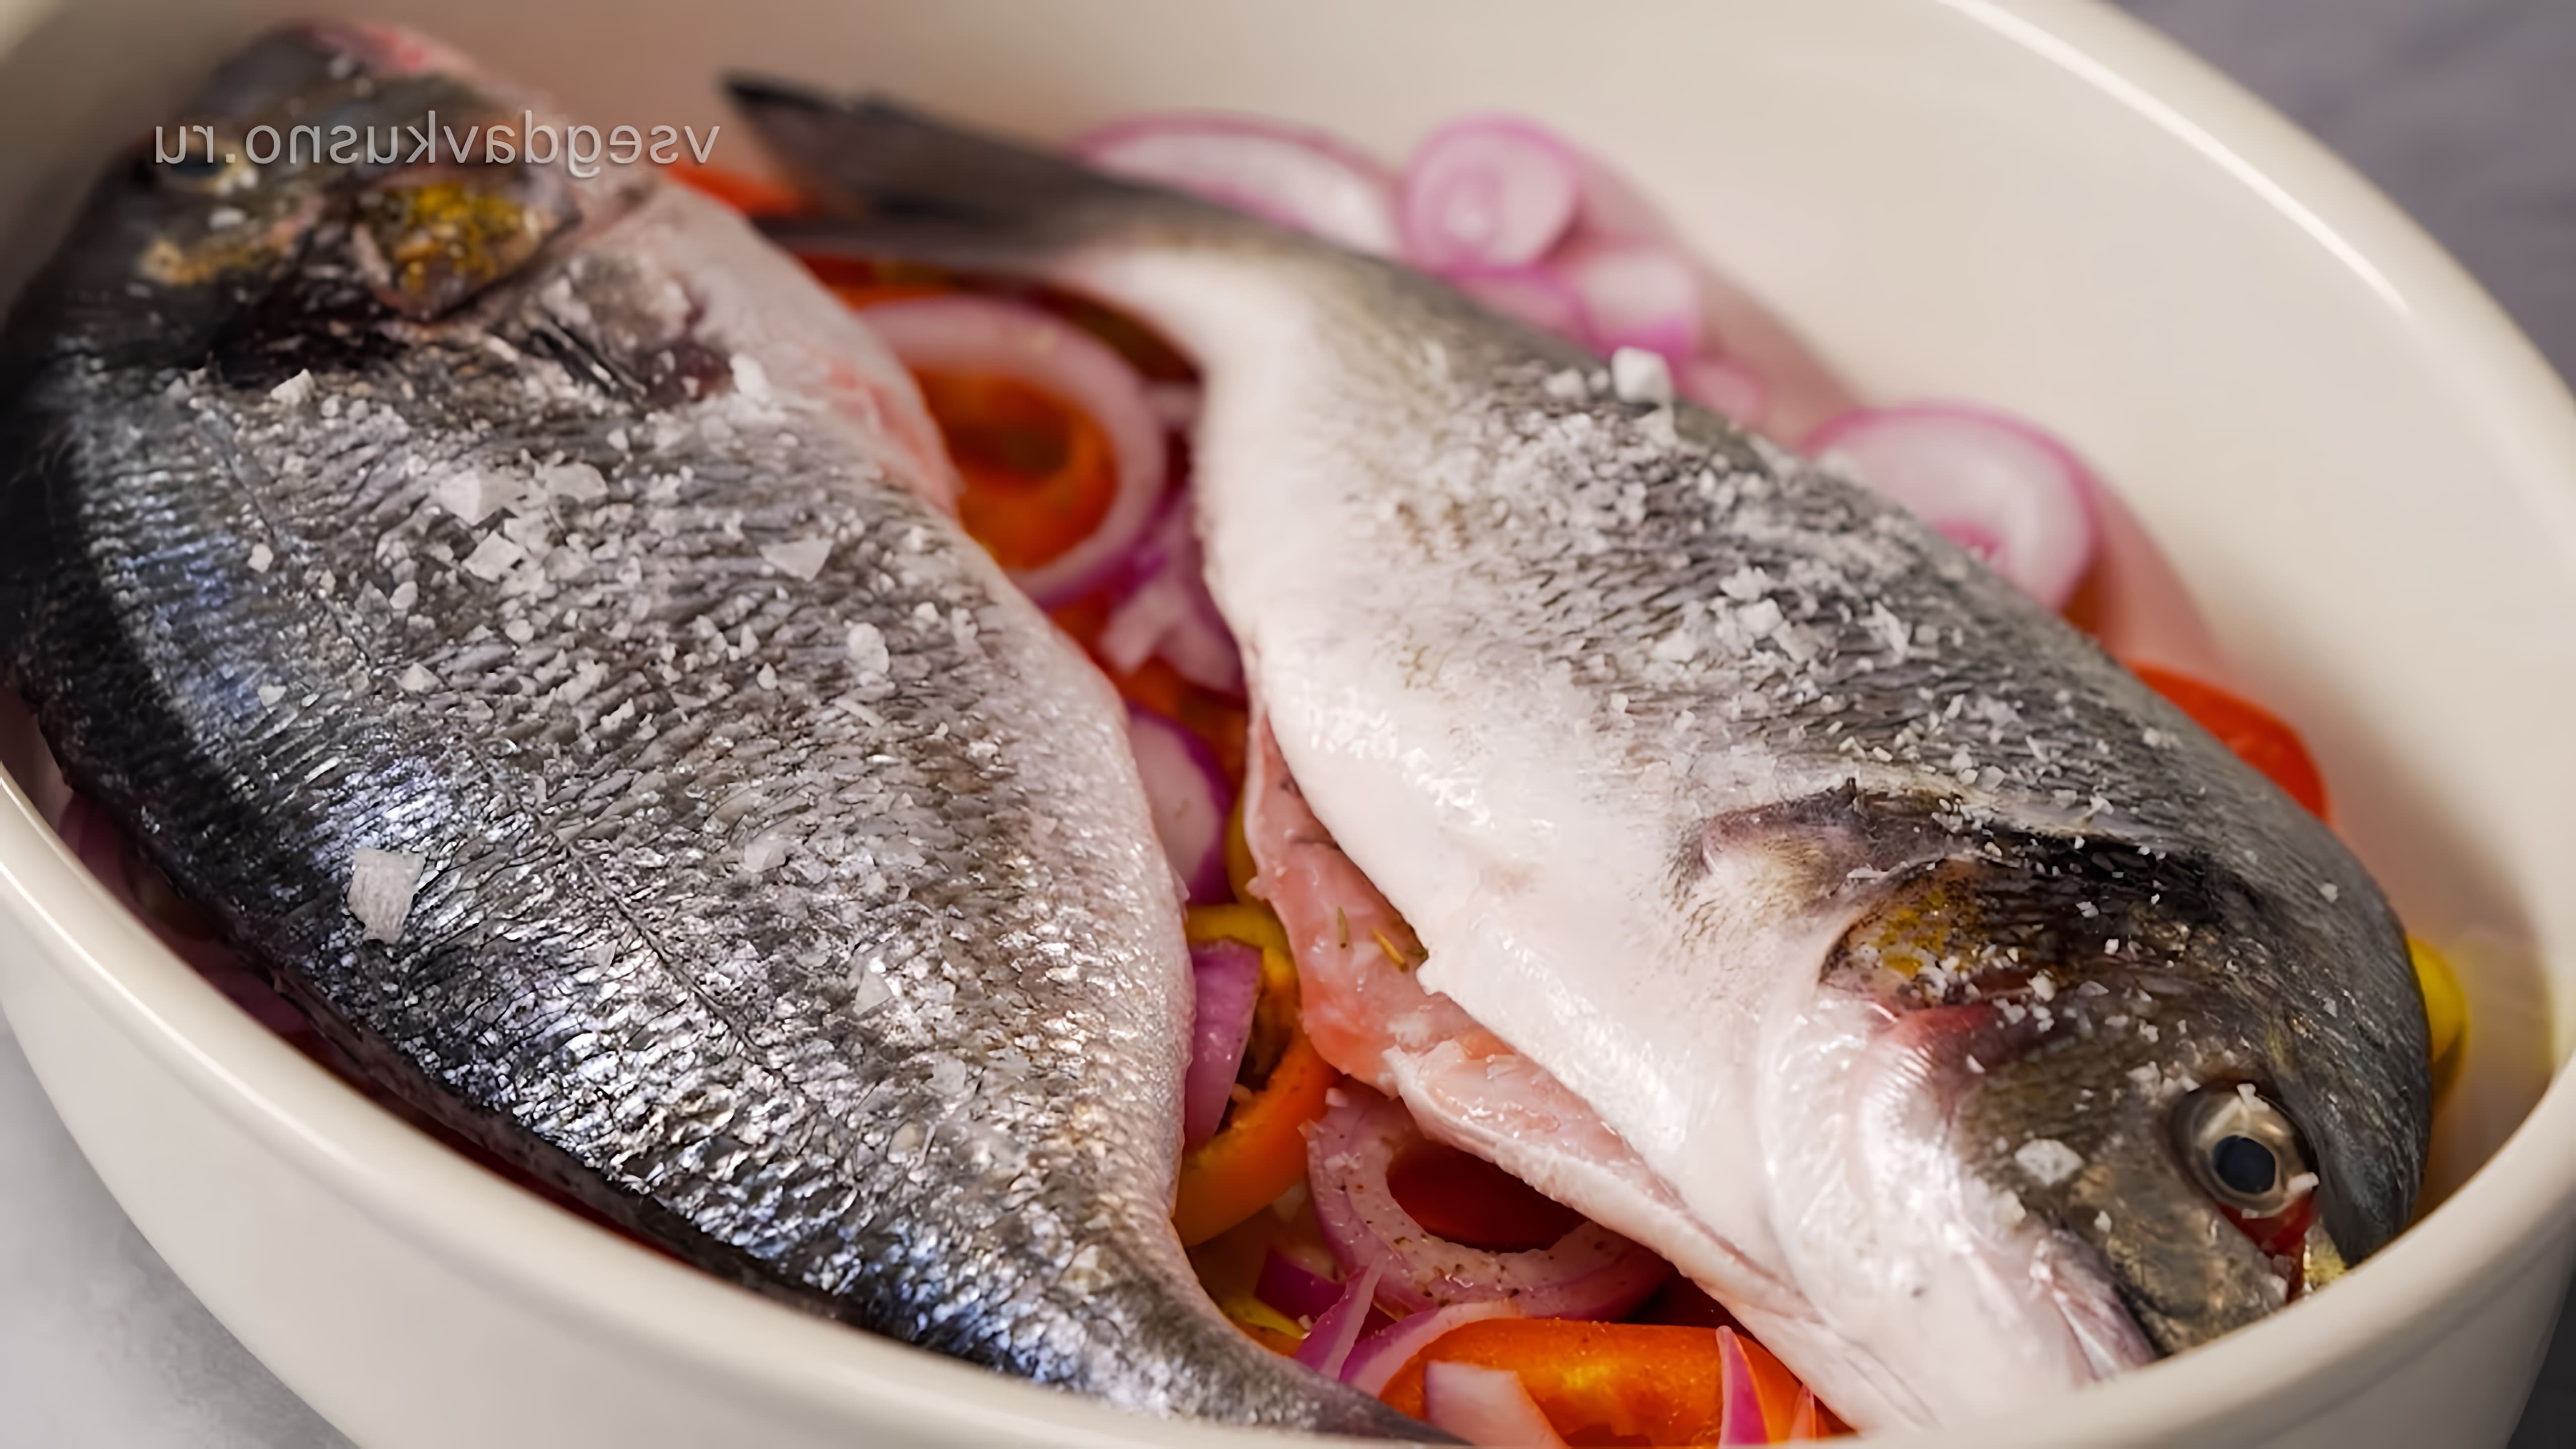 В этом видео-ролике вы увидите 4 рецепта запеченной рыбы в духовке, которые вам захочется приготовить еще не раз! От канала "Всегда Вкусно!" вы узнаете, как приготовить запеченную рыбу с овощами, рыбу с сыром и помидорами, рыбу с картофелем и рыбу с лимоном и зеленью